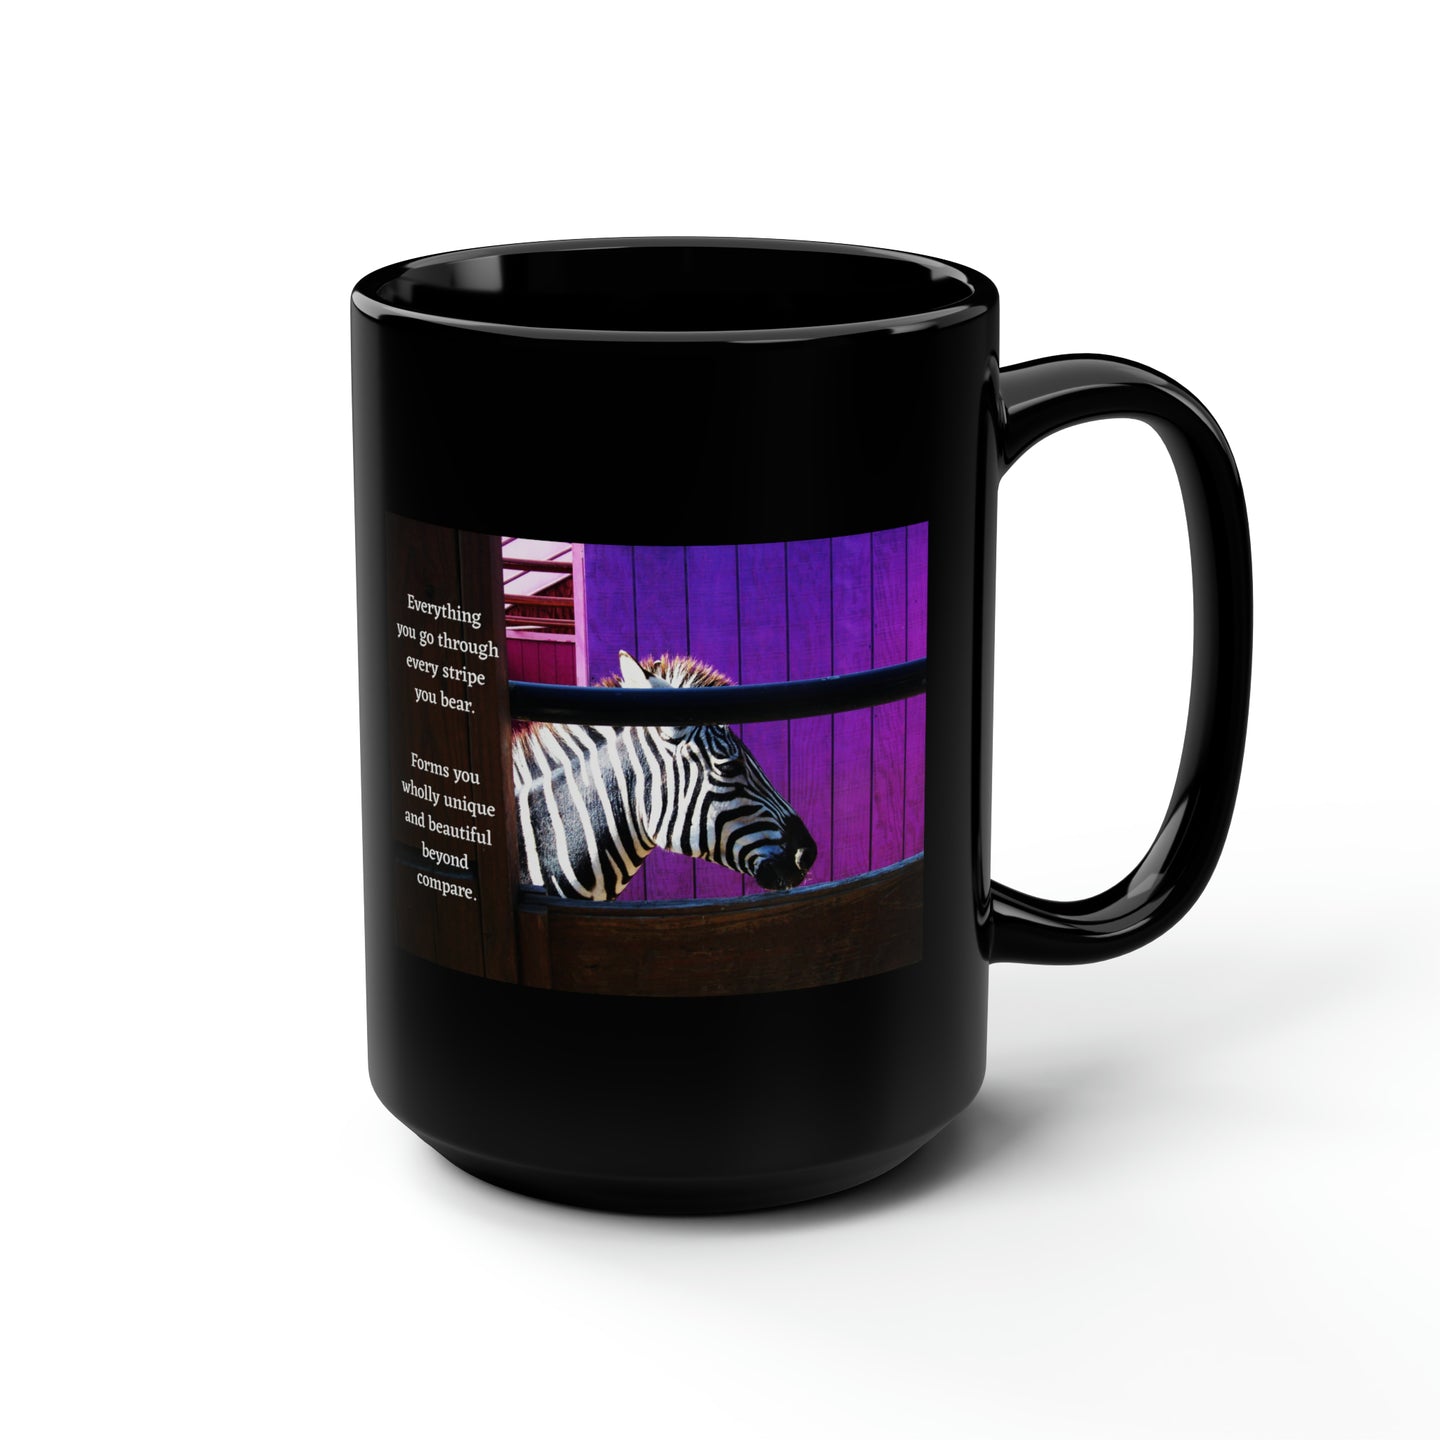 Everything you go through every stripe you bear... | Inspirational Motivational Quote Ceramic Mug | 15oz | Black | Zebra Purple